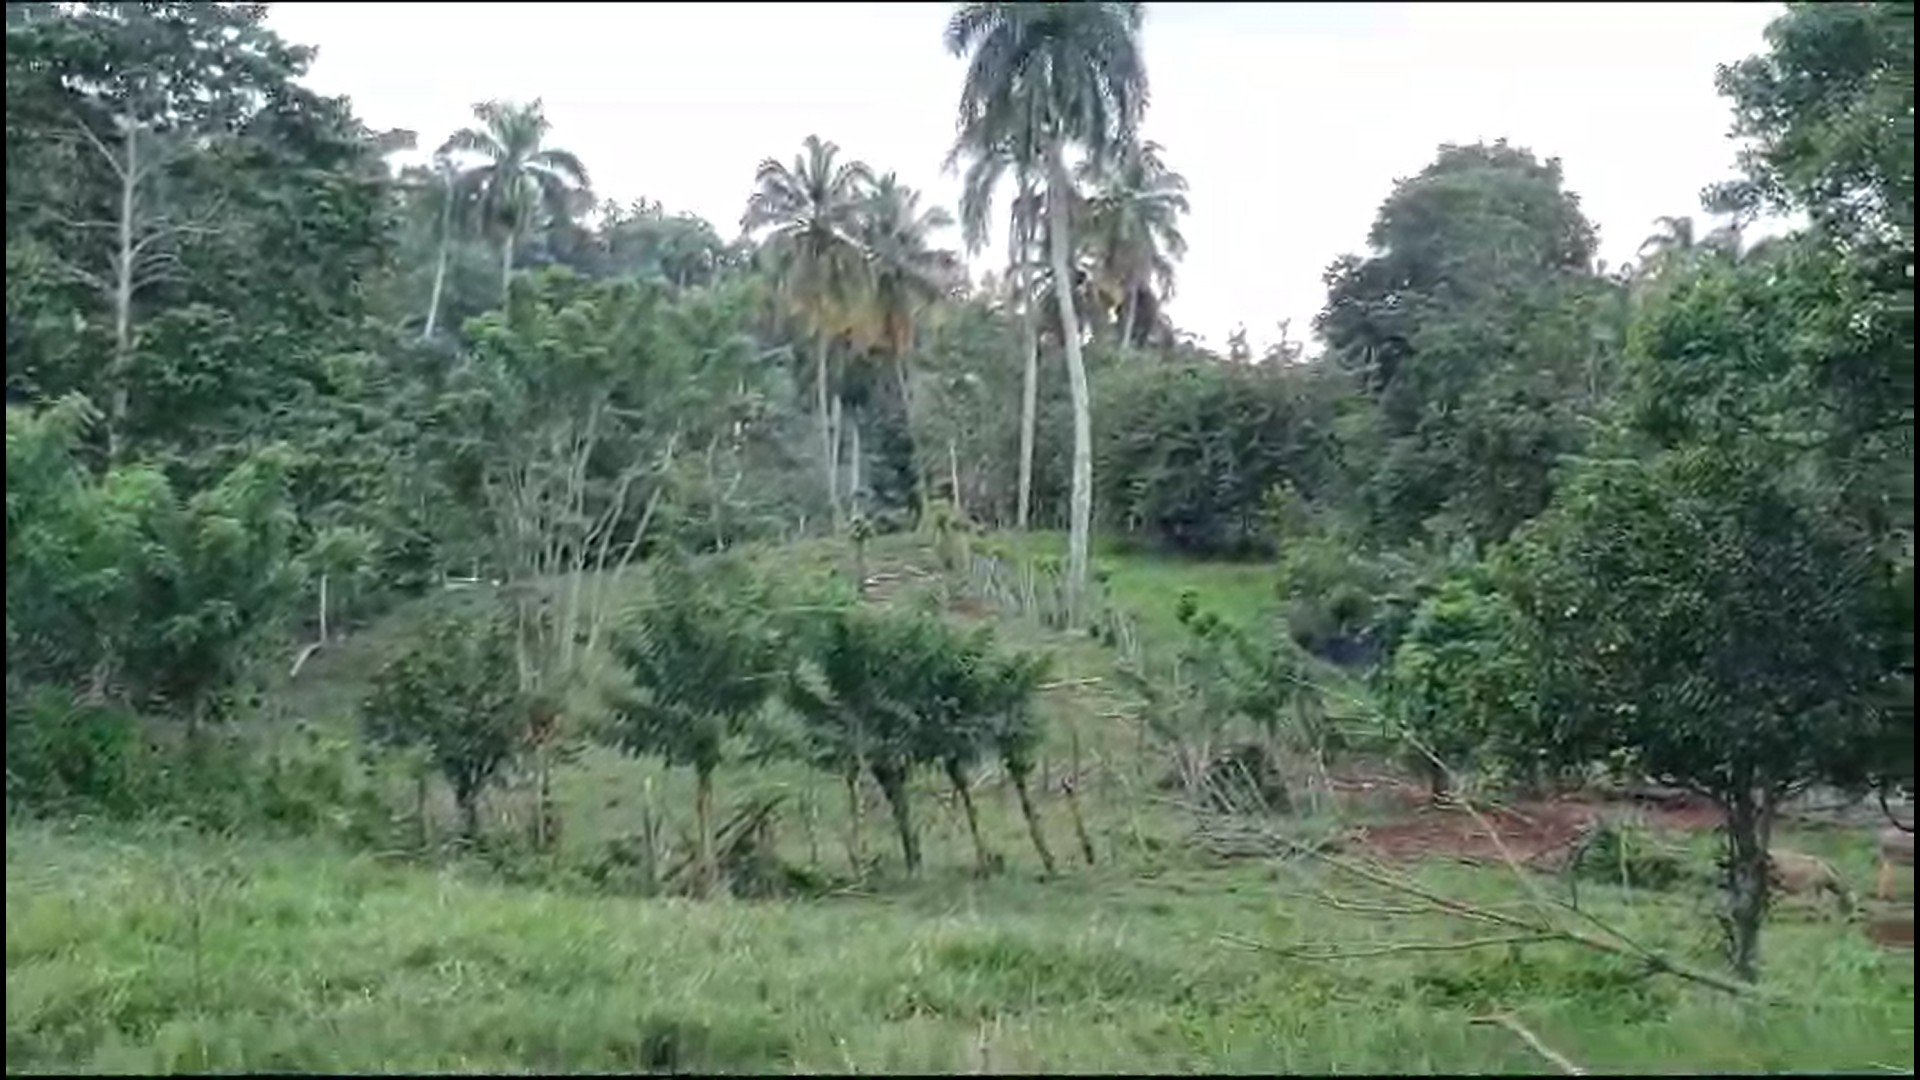 solares y terrenos - 152 tareas de tierra en Cabrera, Maria Trinidad Sanchez, Republica Dominicana. 1